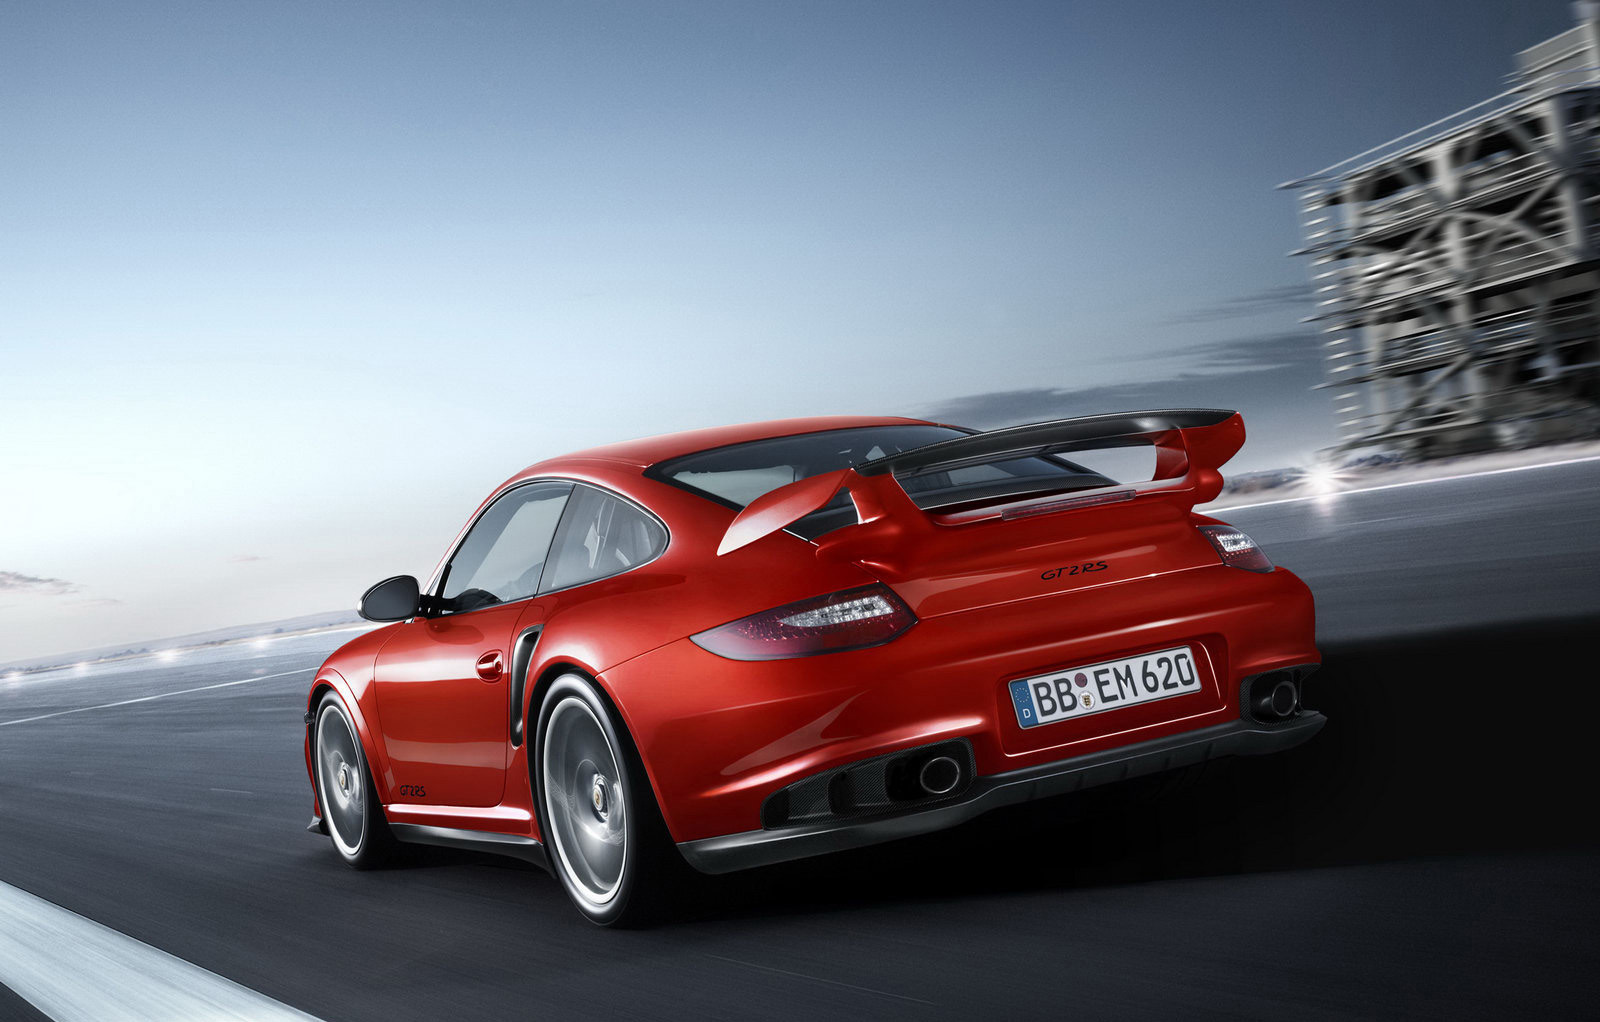 Porsche debutează pe Bursa de la Frankfurt la 75 mld. euro capitalizare, a doua cea mai mare listare germană după Deutsche Telekom în 1996